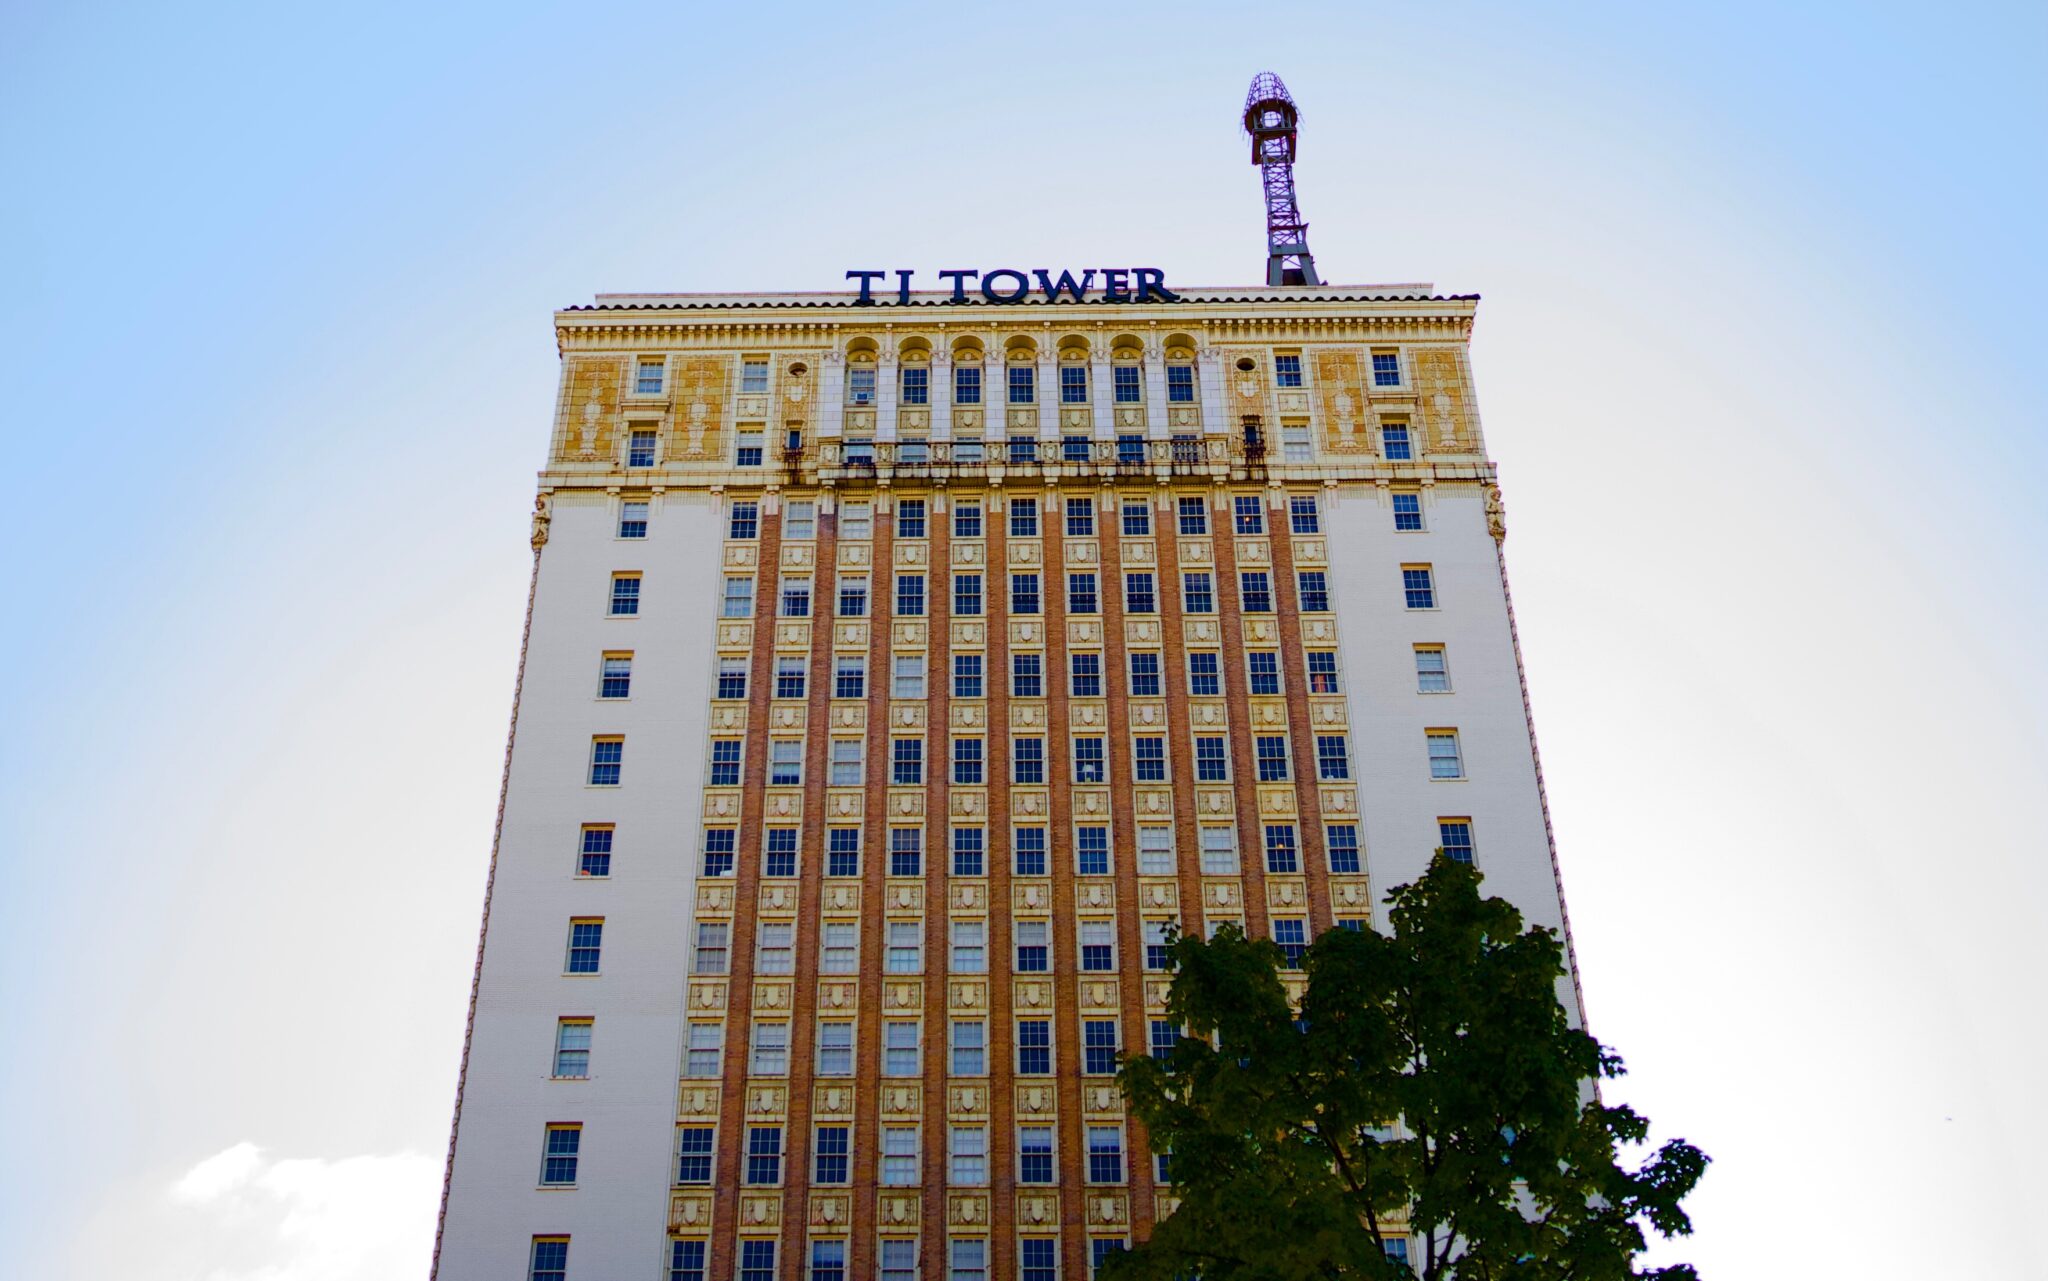 TJ Tower